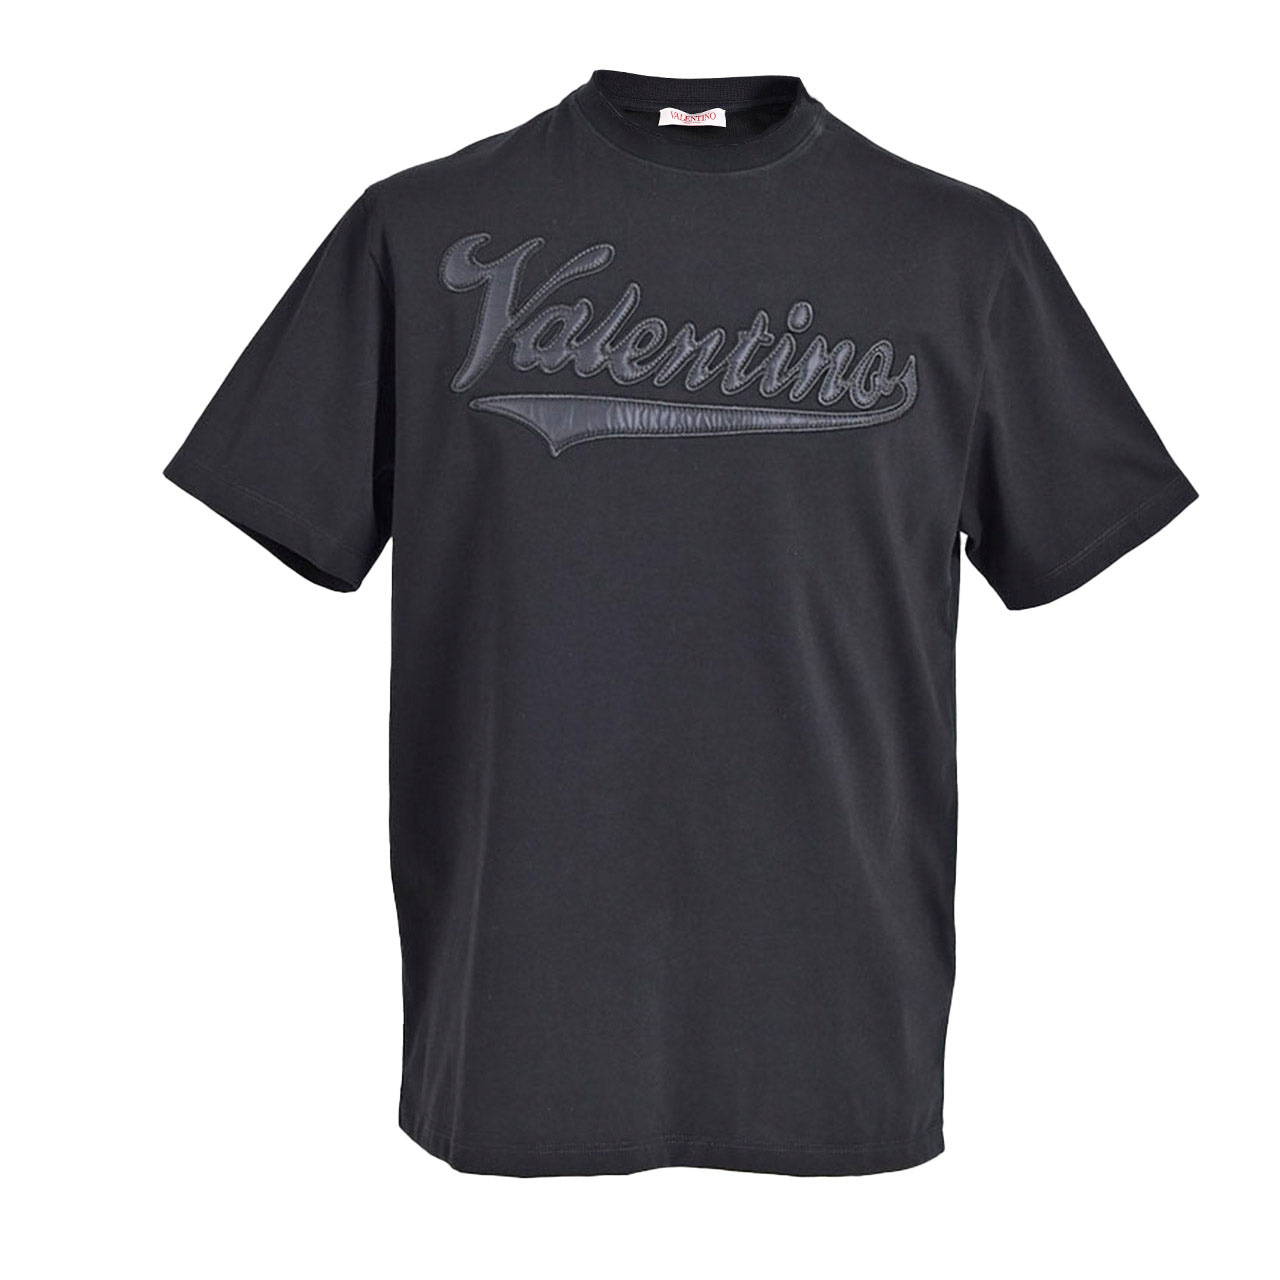 最高の品質の VALENTINO リップTシャツ トップス - www.coolpreschool.com